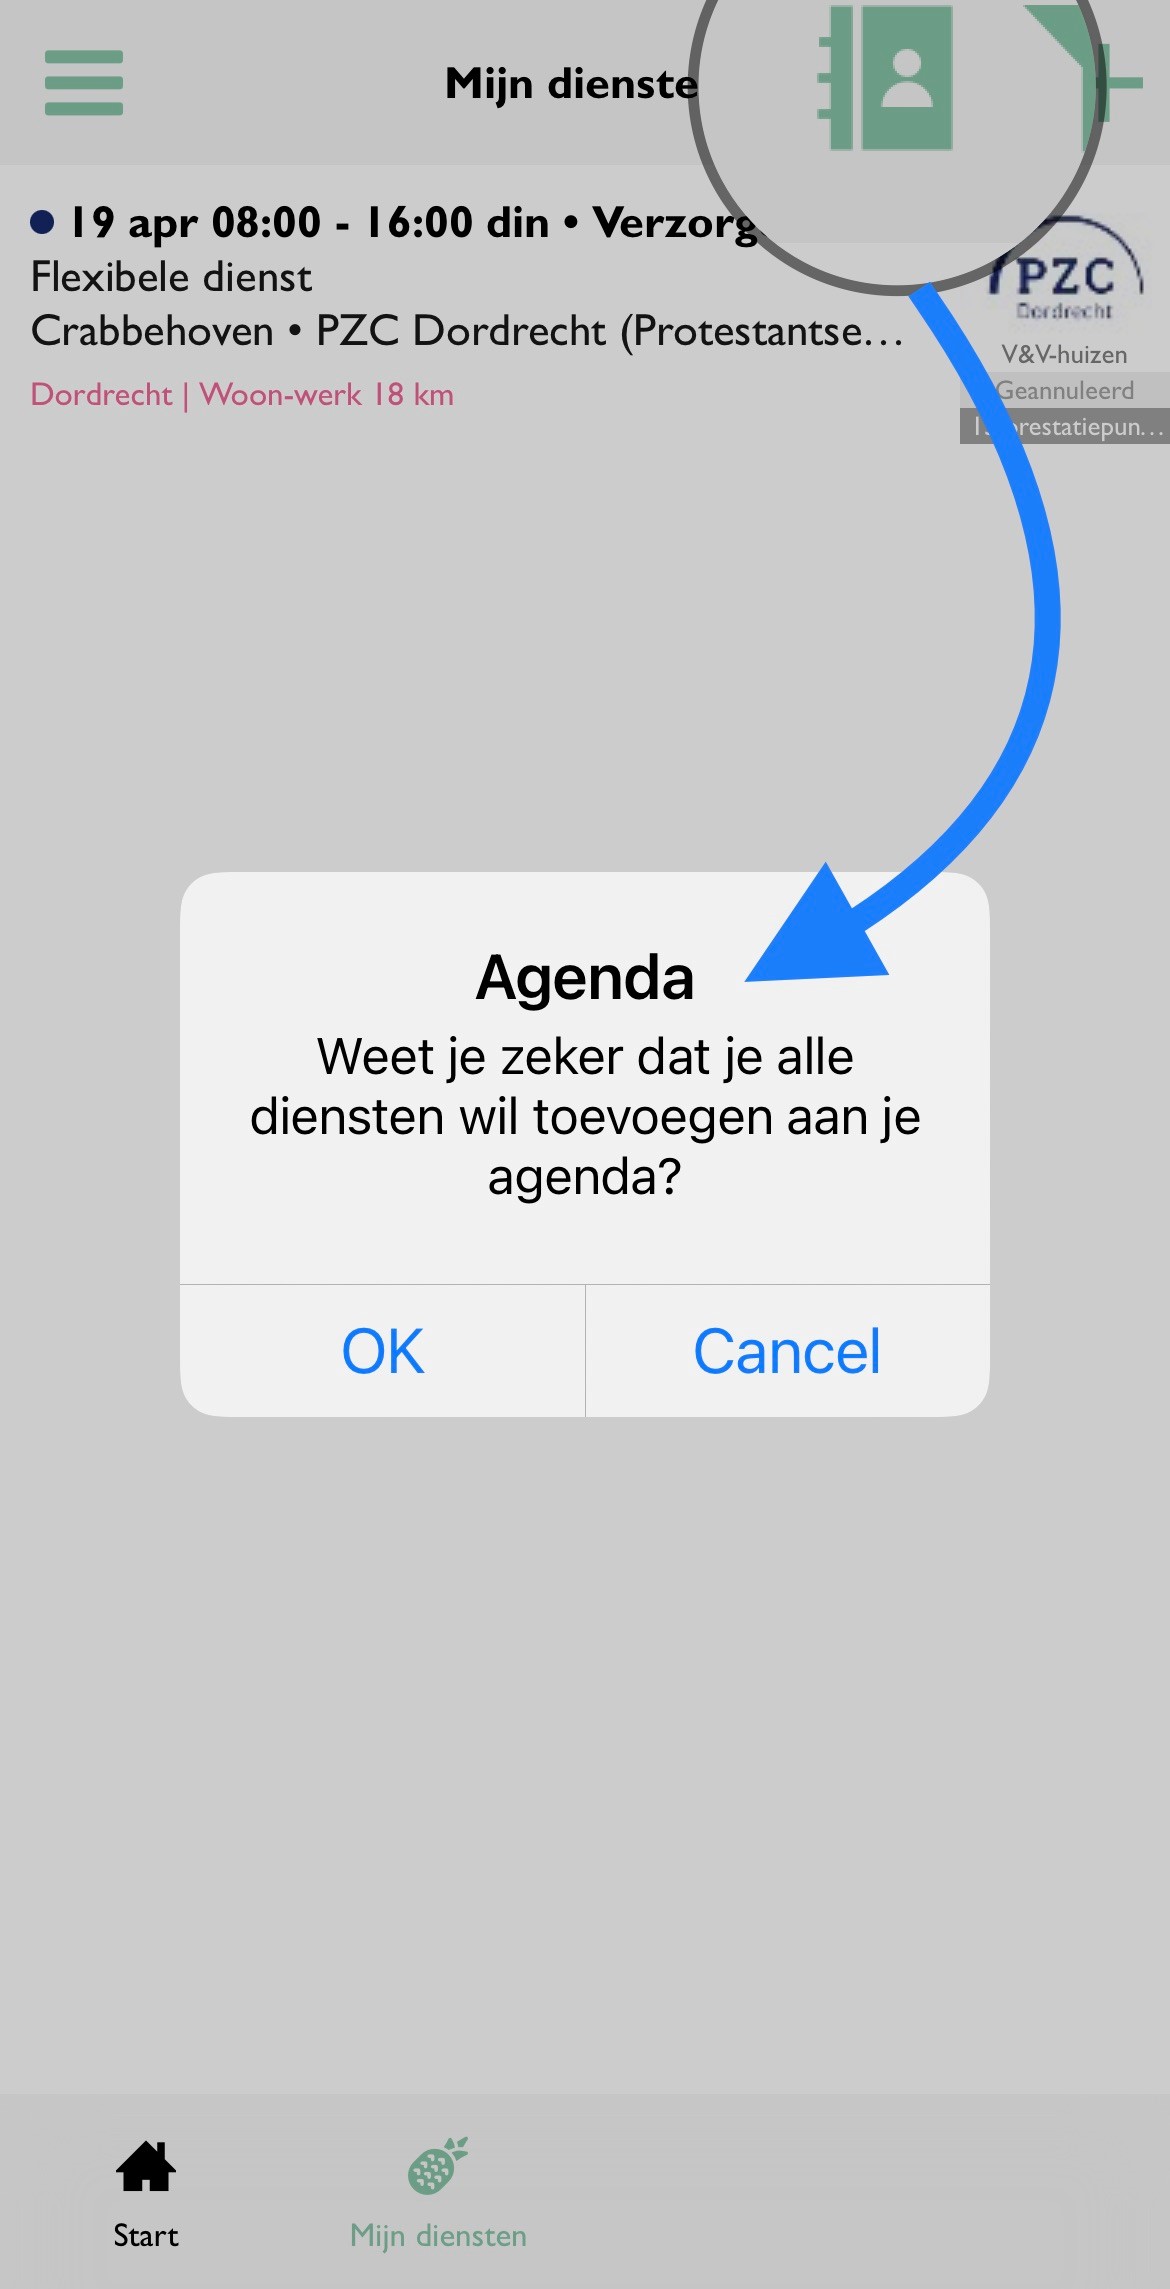 Zorgwerk_App_Agenda_Diensten_Toevoegen.jpg